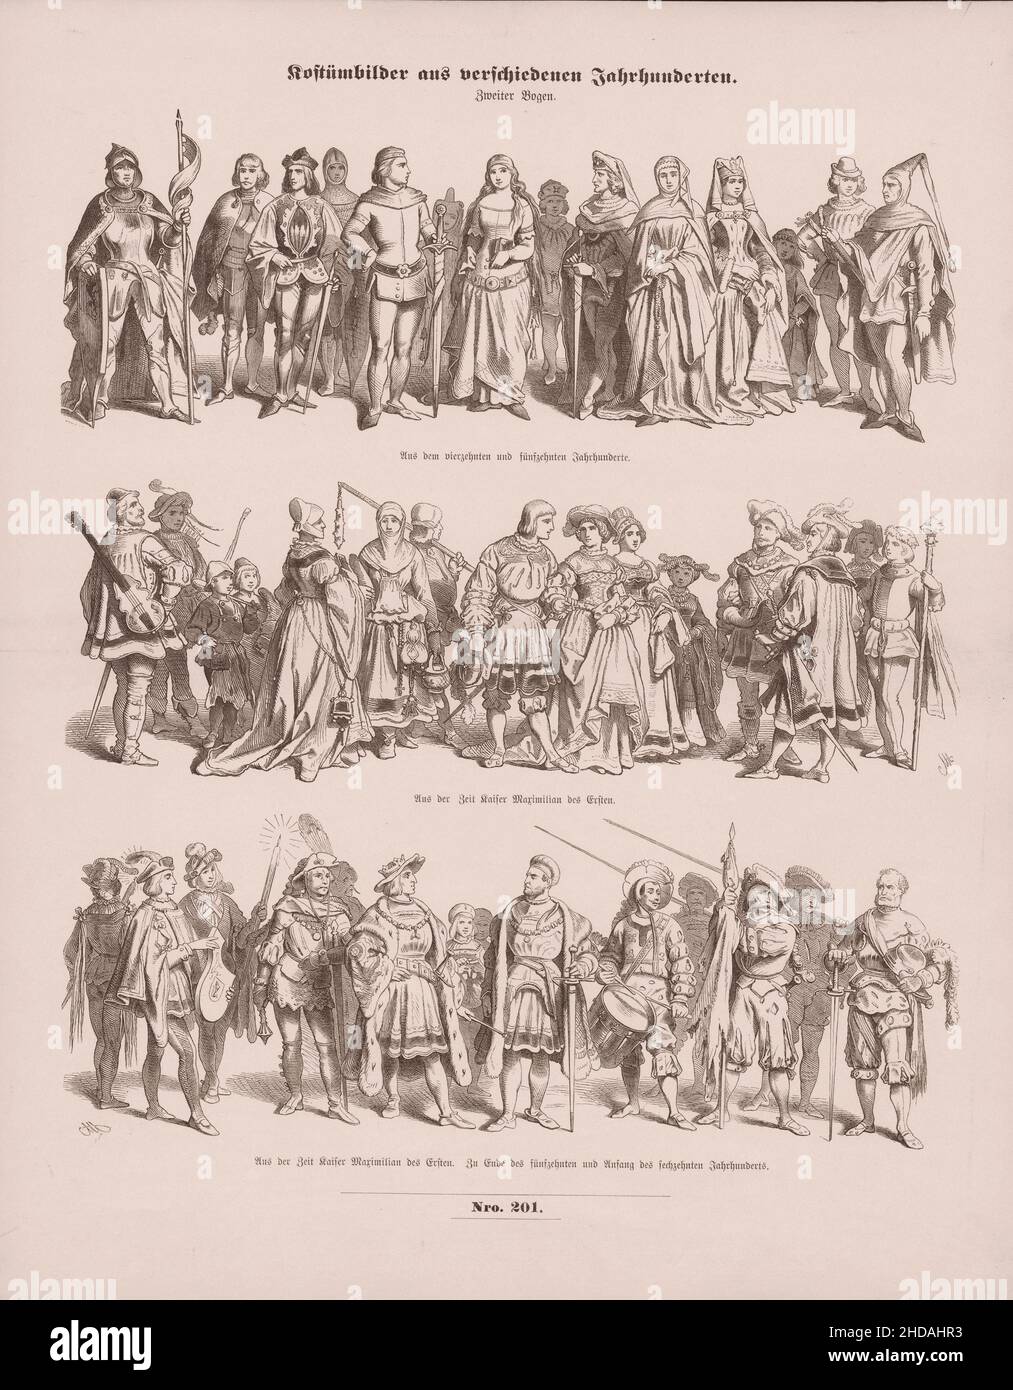 Images de costumes d'époque de différents siècles (illustrations de costumes médiévaux).1856 Costume de 14-15th siècles à partir de l'époque de Maximilien Banque D'Images